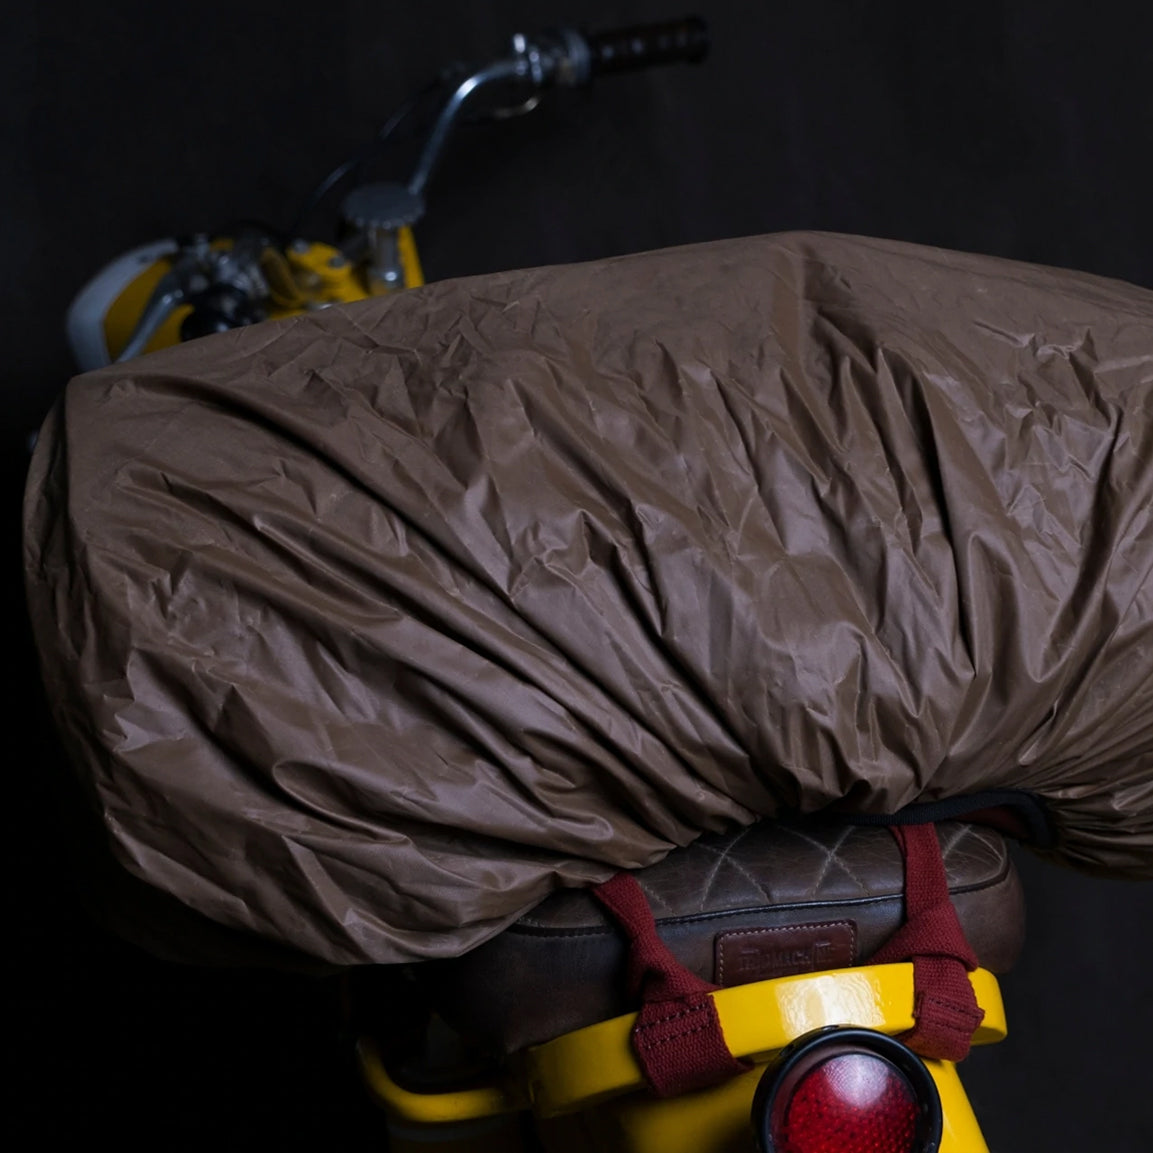 Trip Machine Military Duffel - vintage tan. Klassische Motorrad-Gepäcktasche aus hellbraunem Leder im Retro-/Vintage-Stil, mit 24 Liter Volumen perfekt für einen Mehr-Tages Ausflug. Einfaches Montagesystem an nahezu jedem Motorrad möglich.